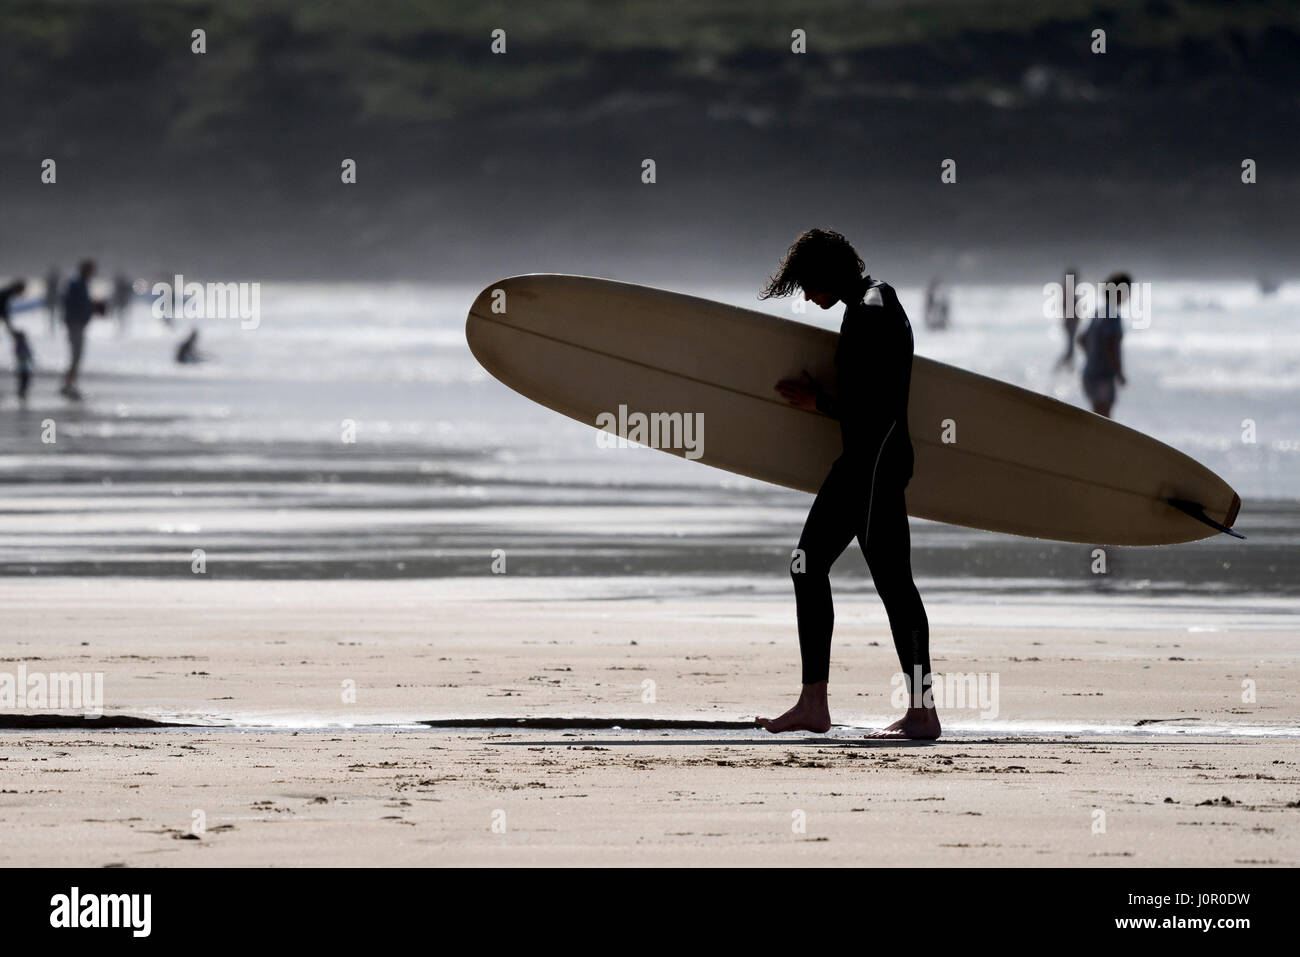 UK Surfen - die Silhouette eines Surfer aus dem Meer. Stockfoto